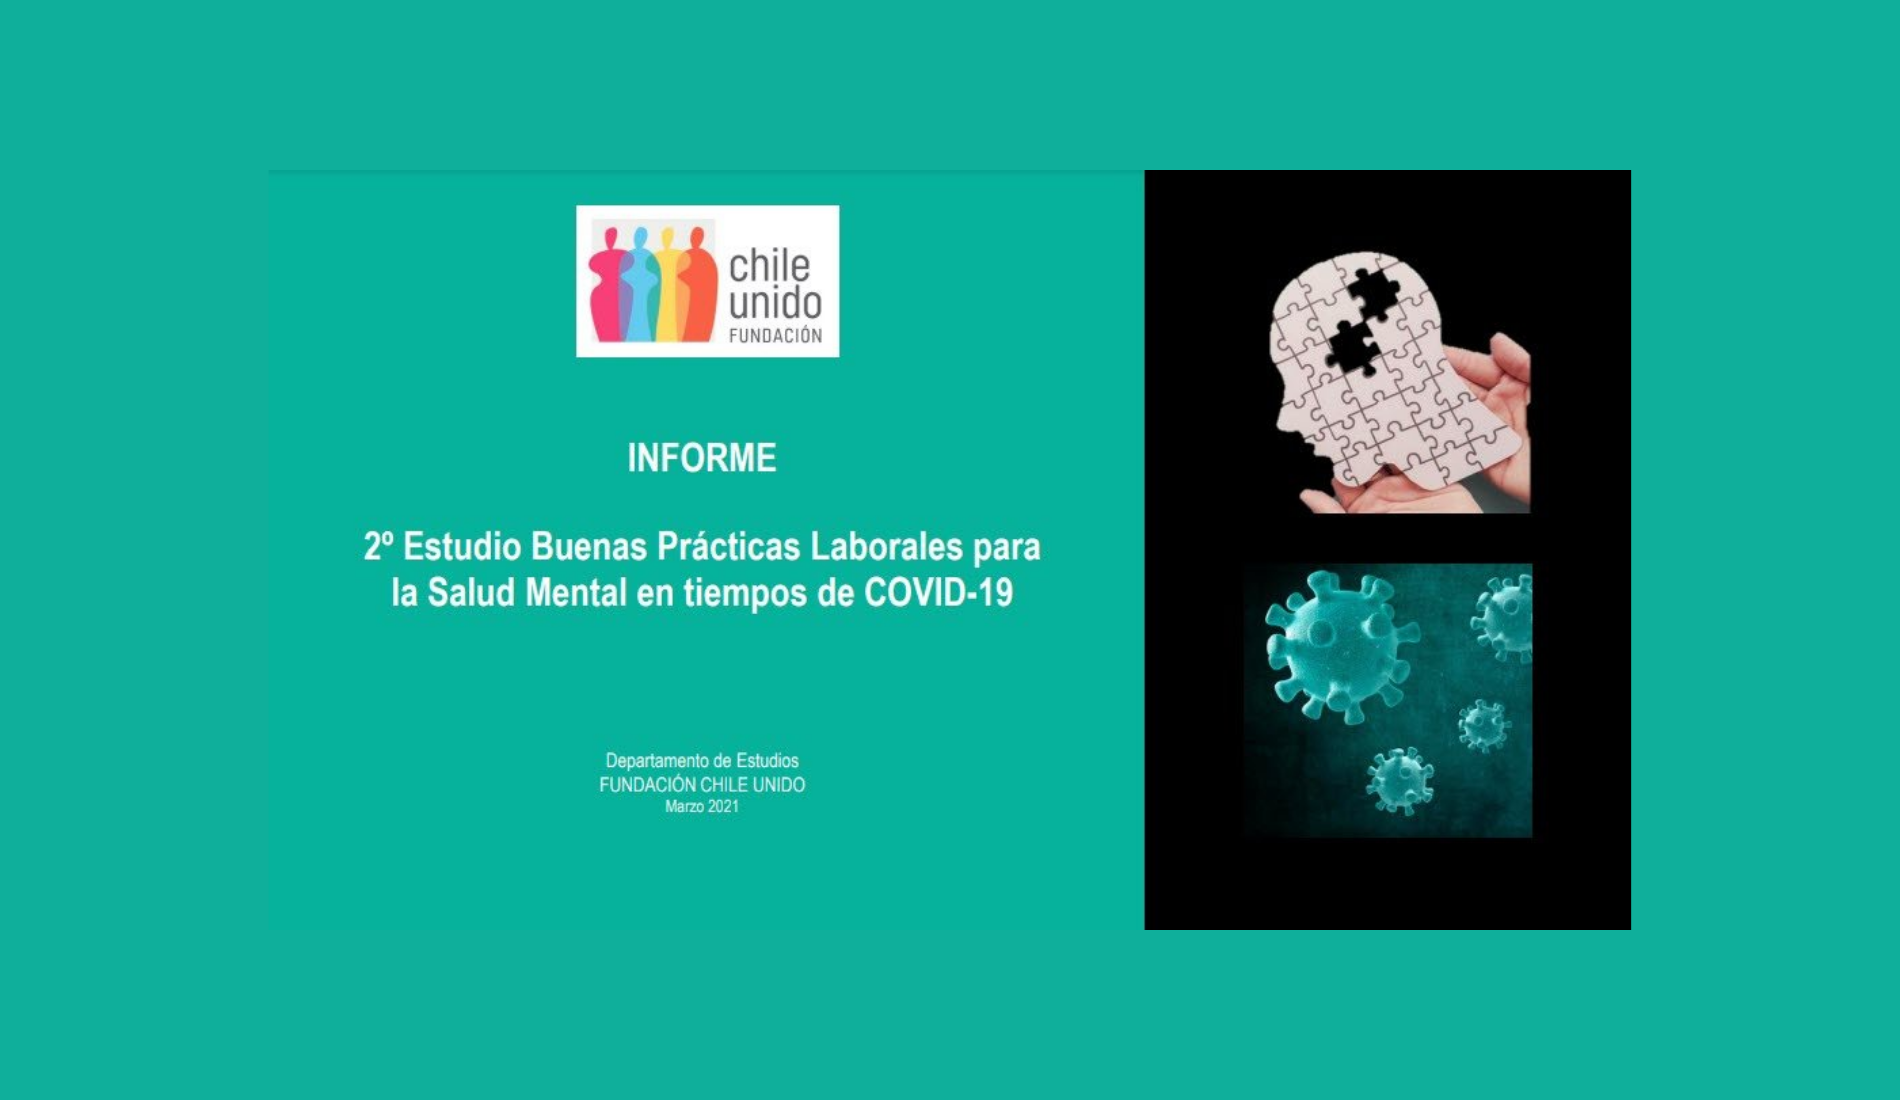 INFORME - 2º Estudio Buenas Prácticas Laborales para la Salud Mental en tiempos de COVID-19 - Fundación Chile Unido - Marzo 2021 - Portada